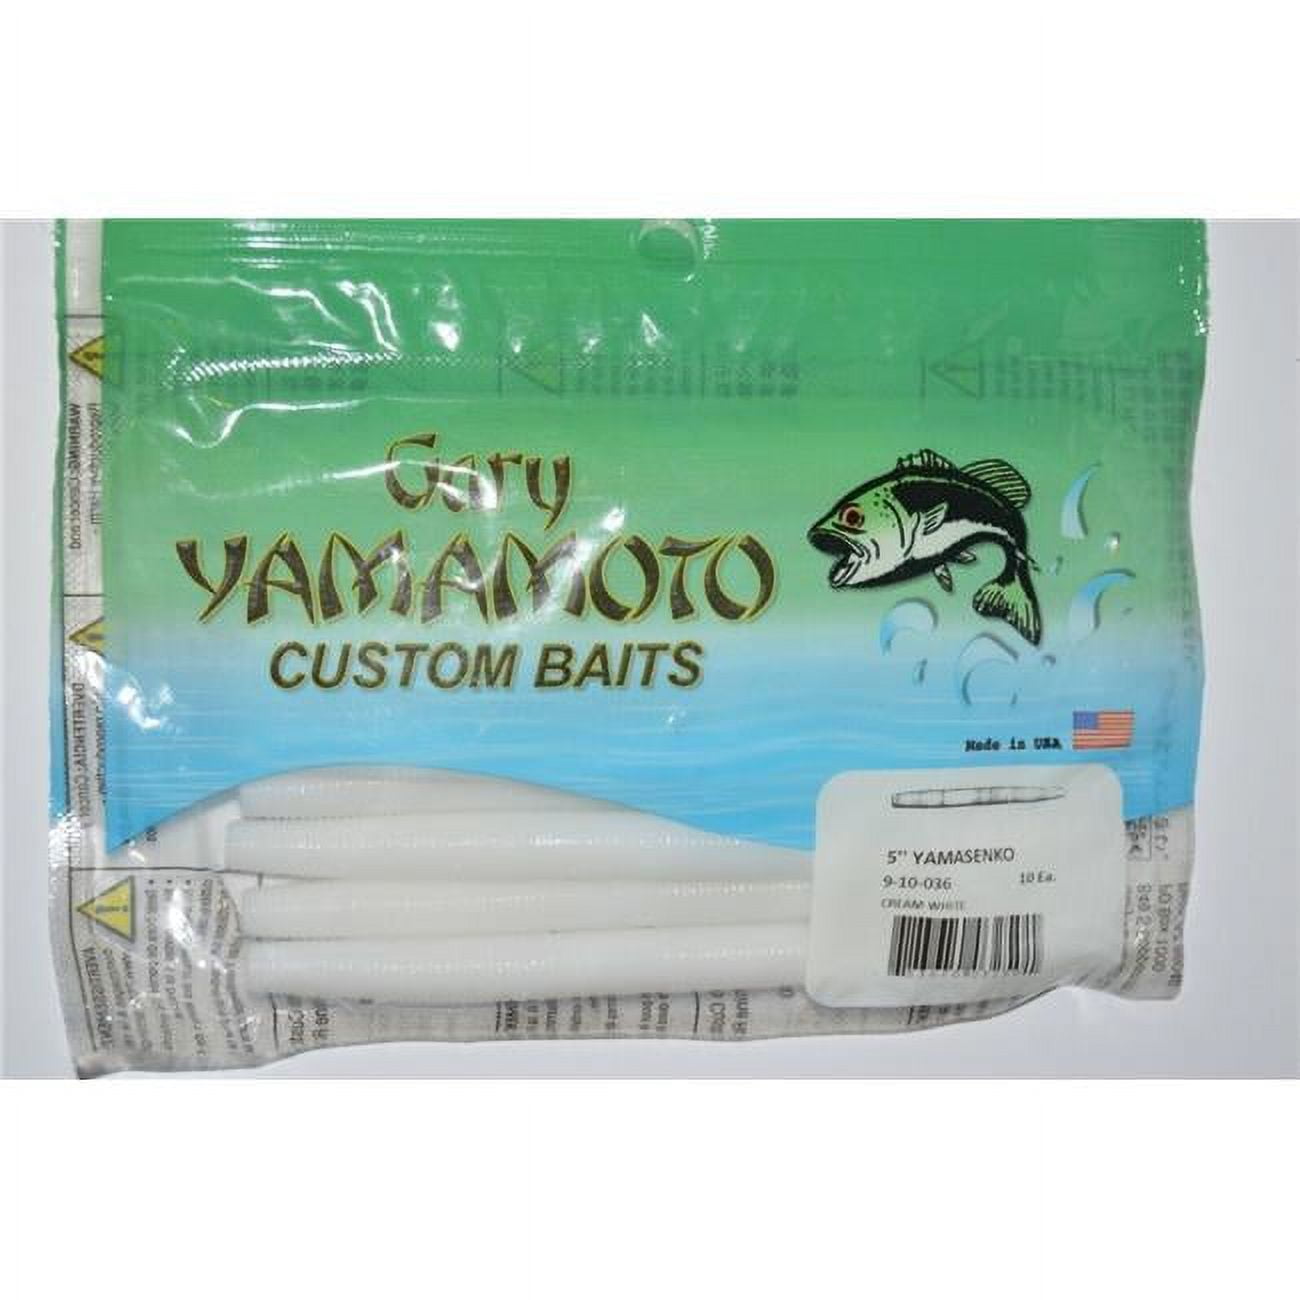 Yamamoto 9-10-036 Senko Fishing Bait, Cream White Bait